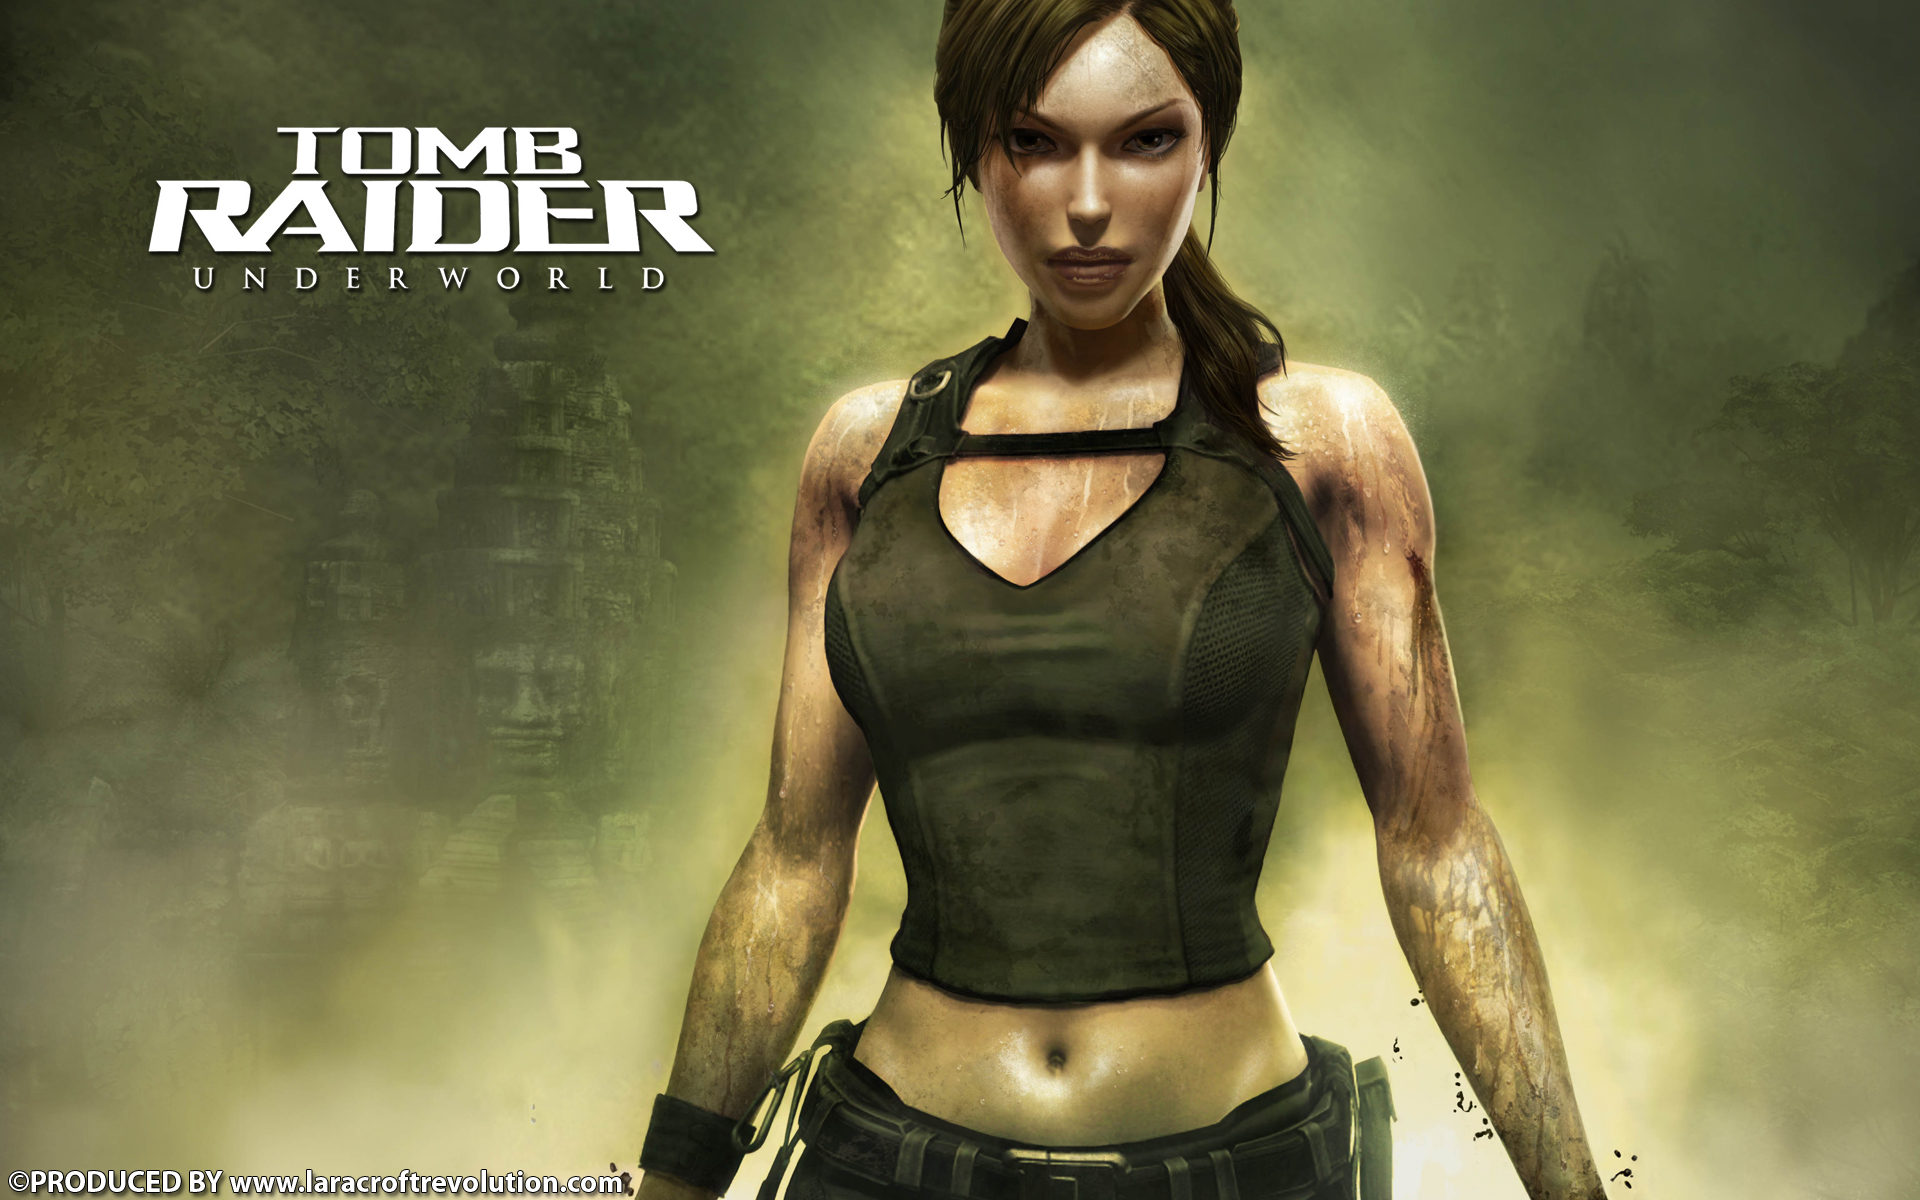 Lara Croft Revolution Tomb Raider Underworld Wallpaper